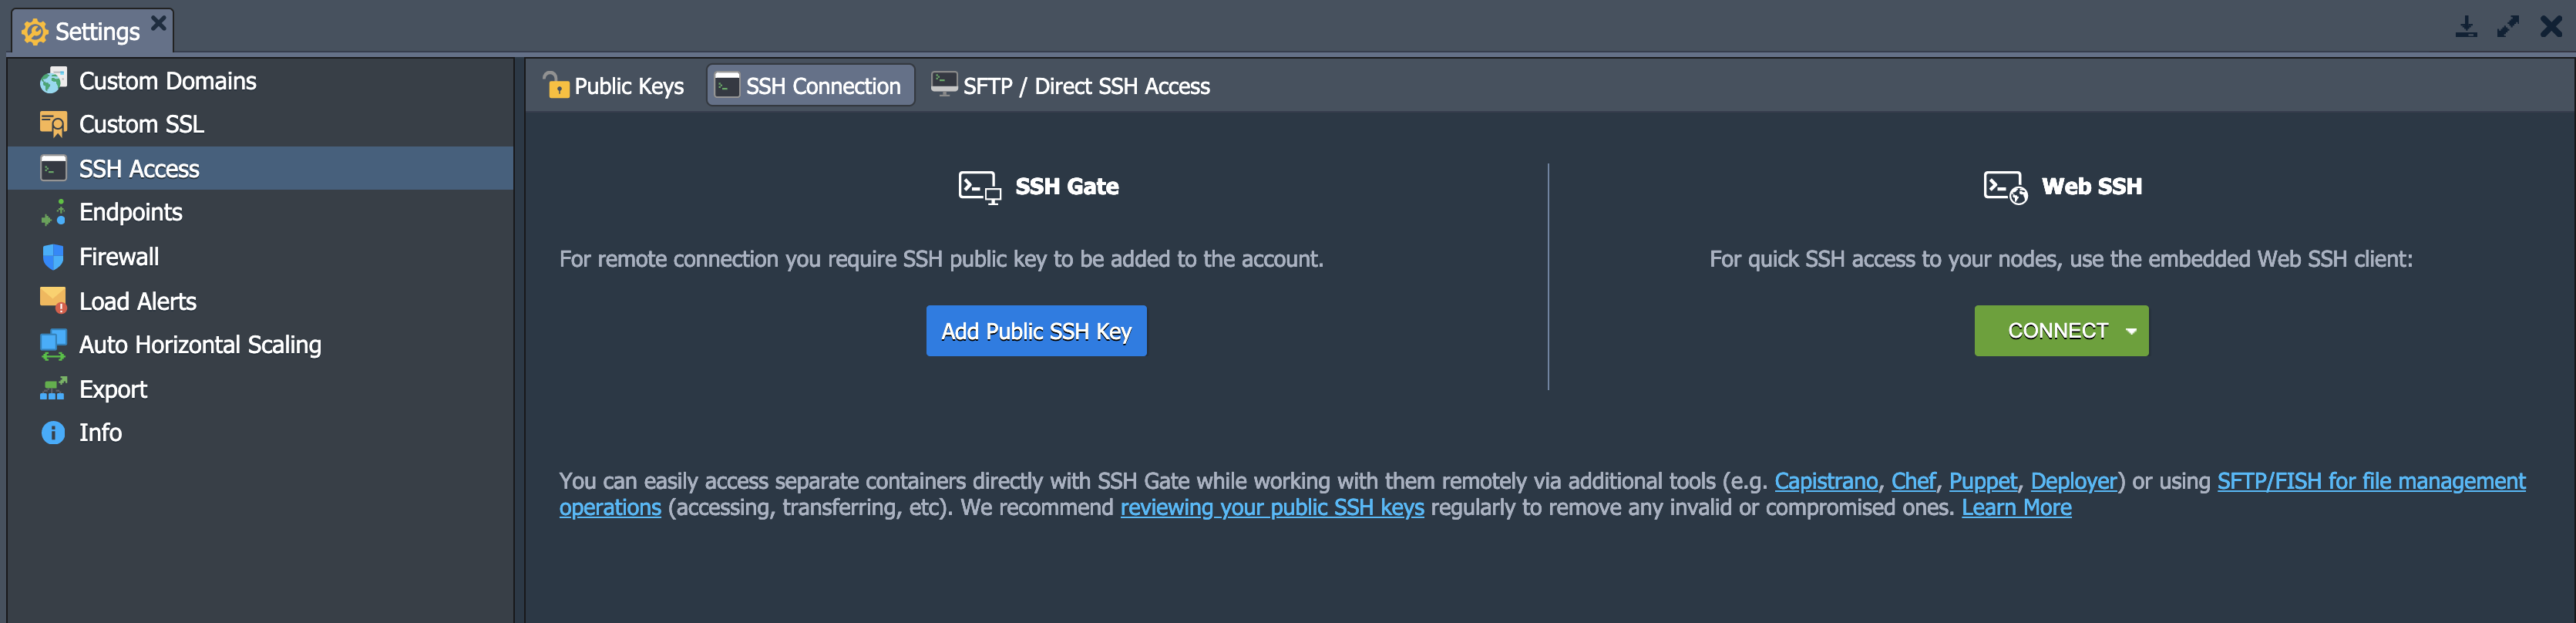 PaaS Dashboard SSL access